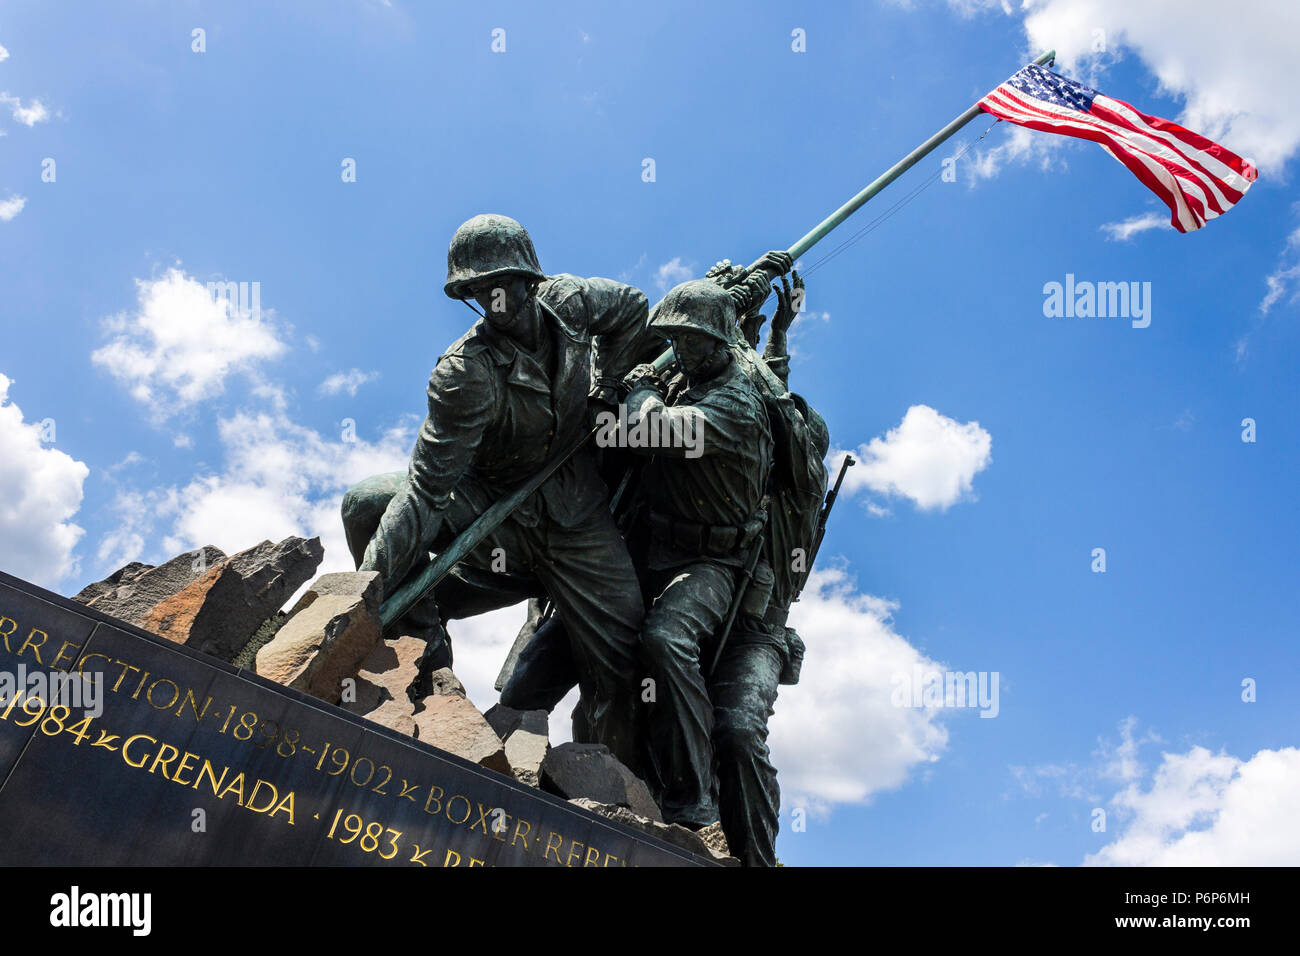 Arlington, Virginia. Gli Stati Uniti Marine Corps War Memorial (Iwo Jima Memorial), un monumento nazionale situato in Arlington Ridge Park progettato da Foto Stock